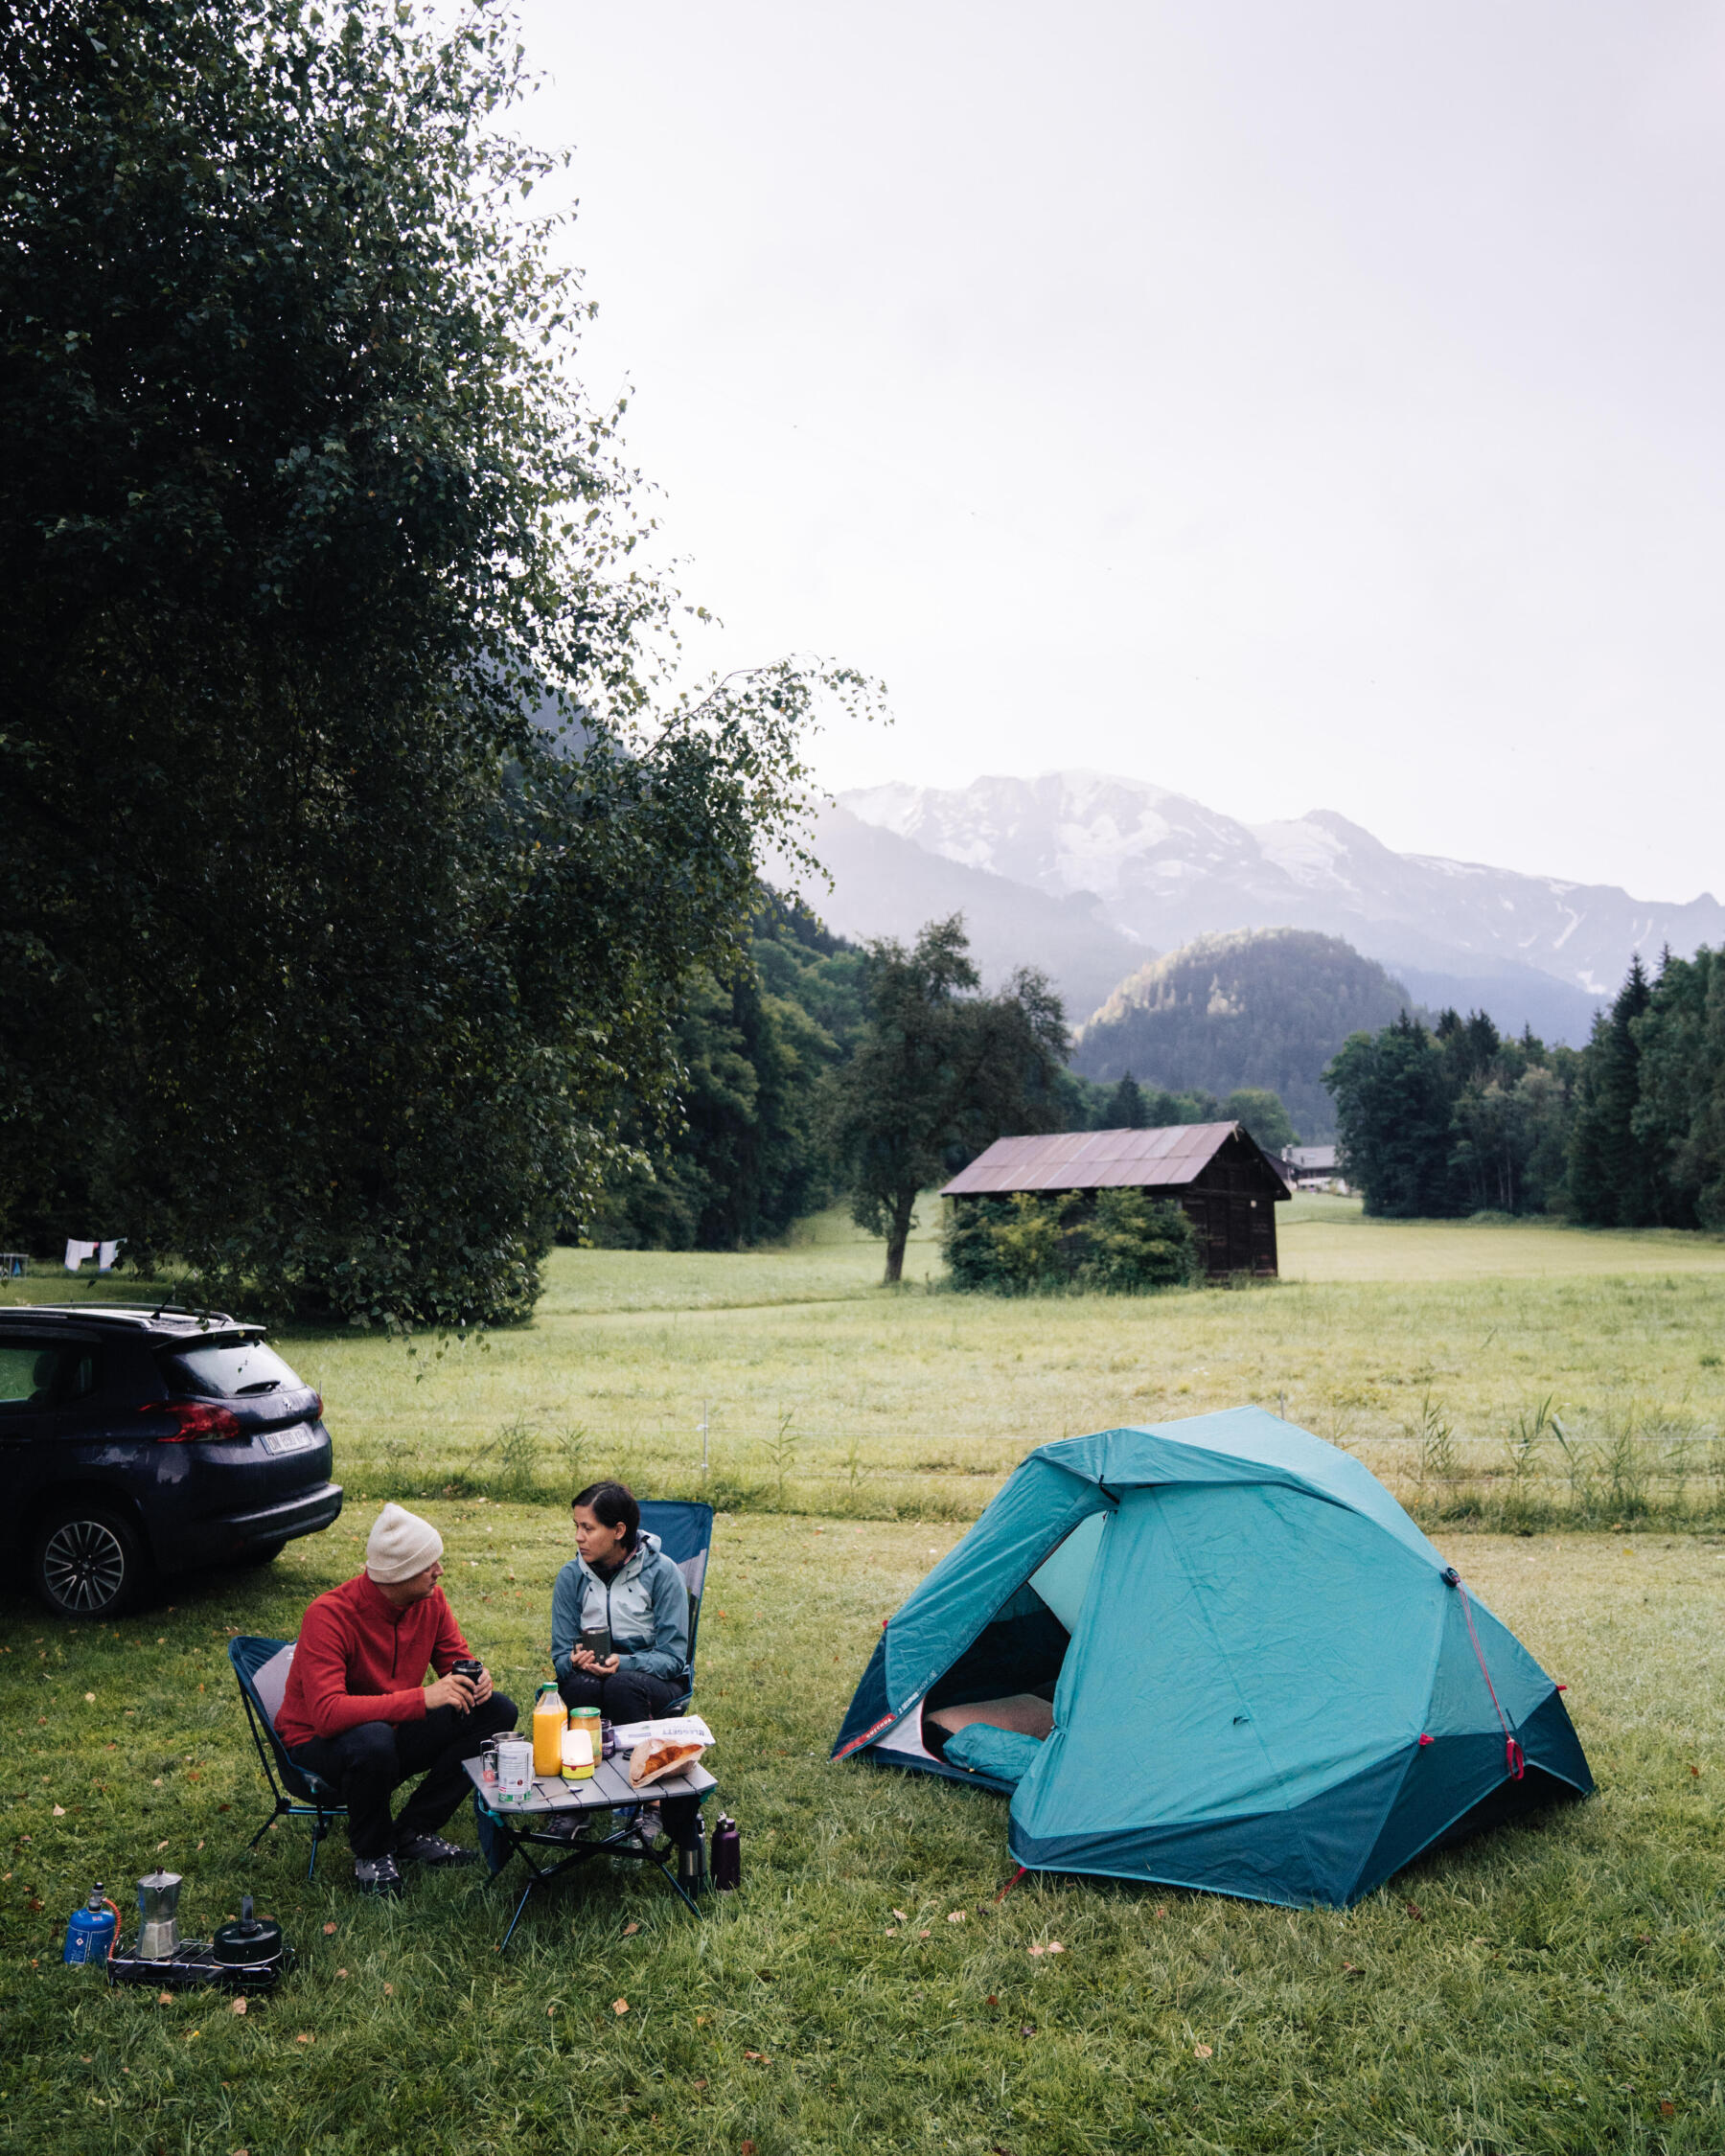 Douche camping : notre avis après 2 ans de tests